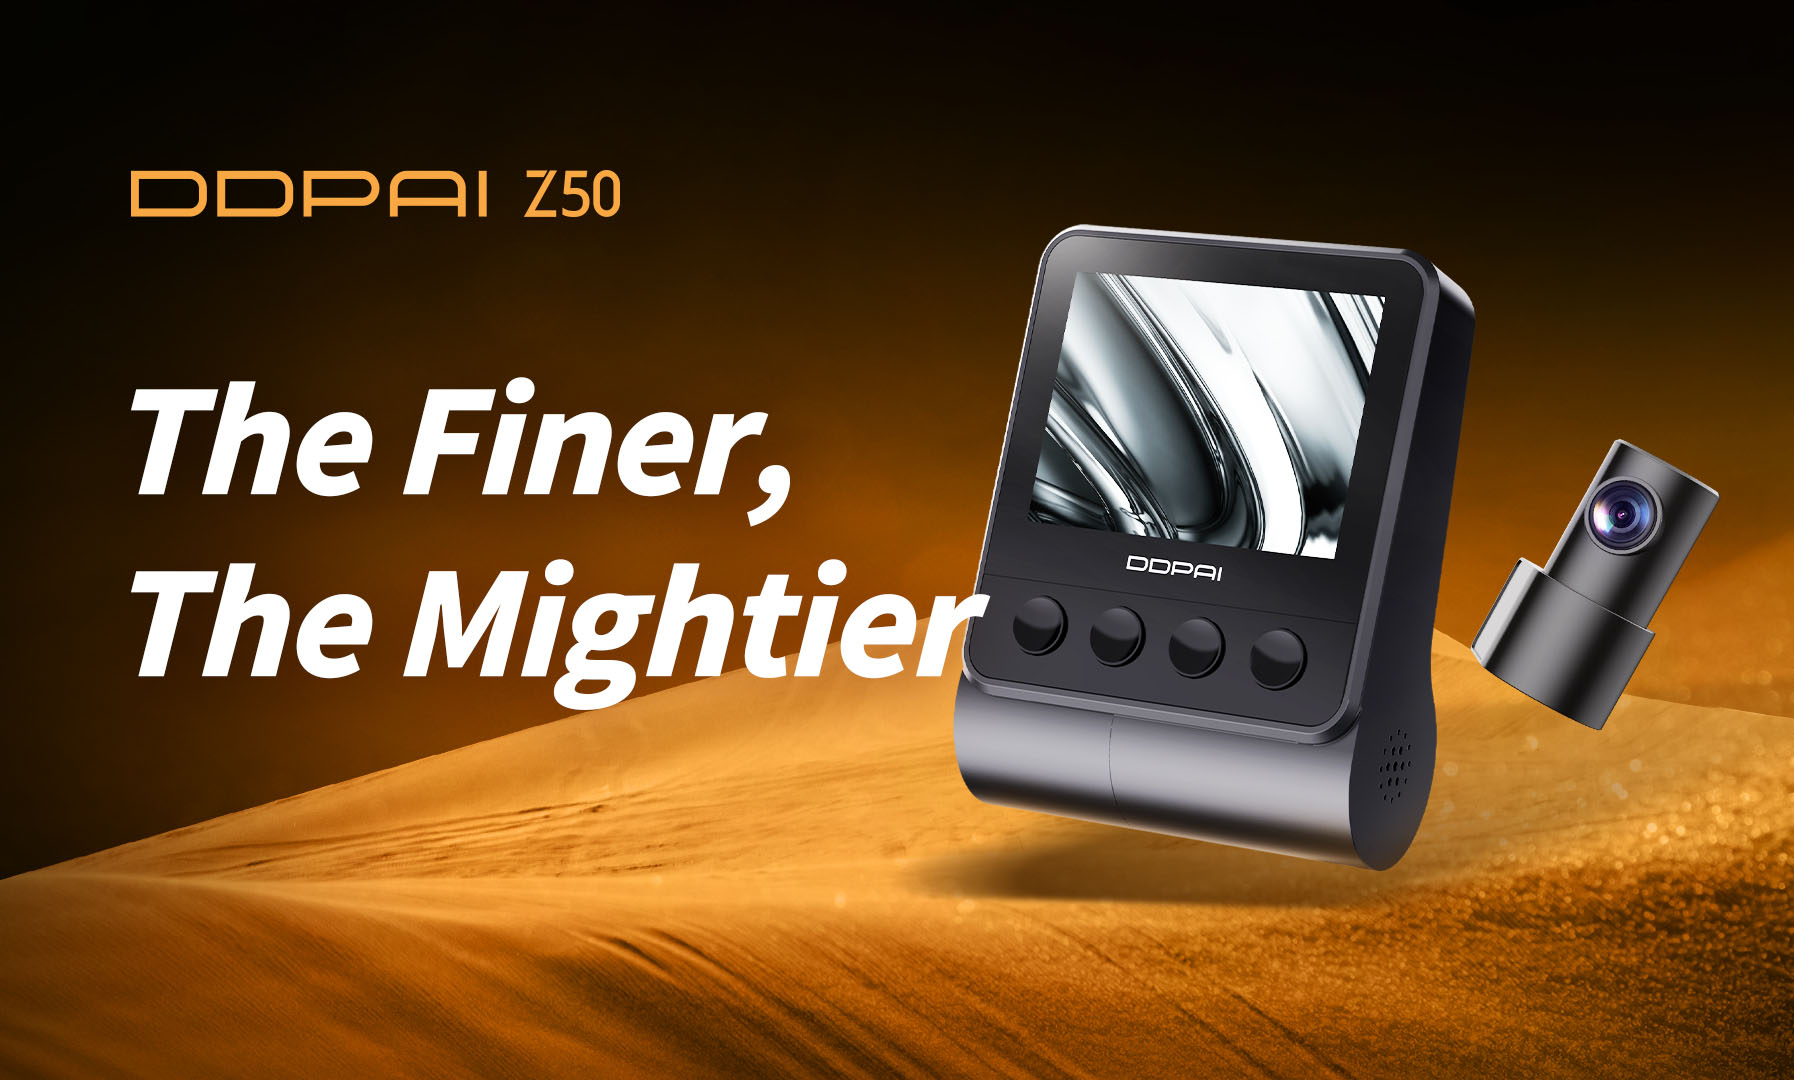 DDPAI Z50 4K Dual Dash Cam Launch